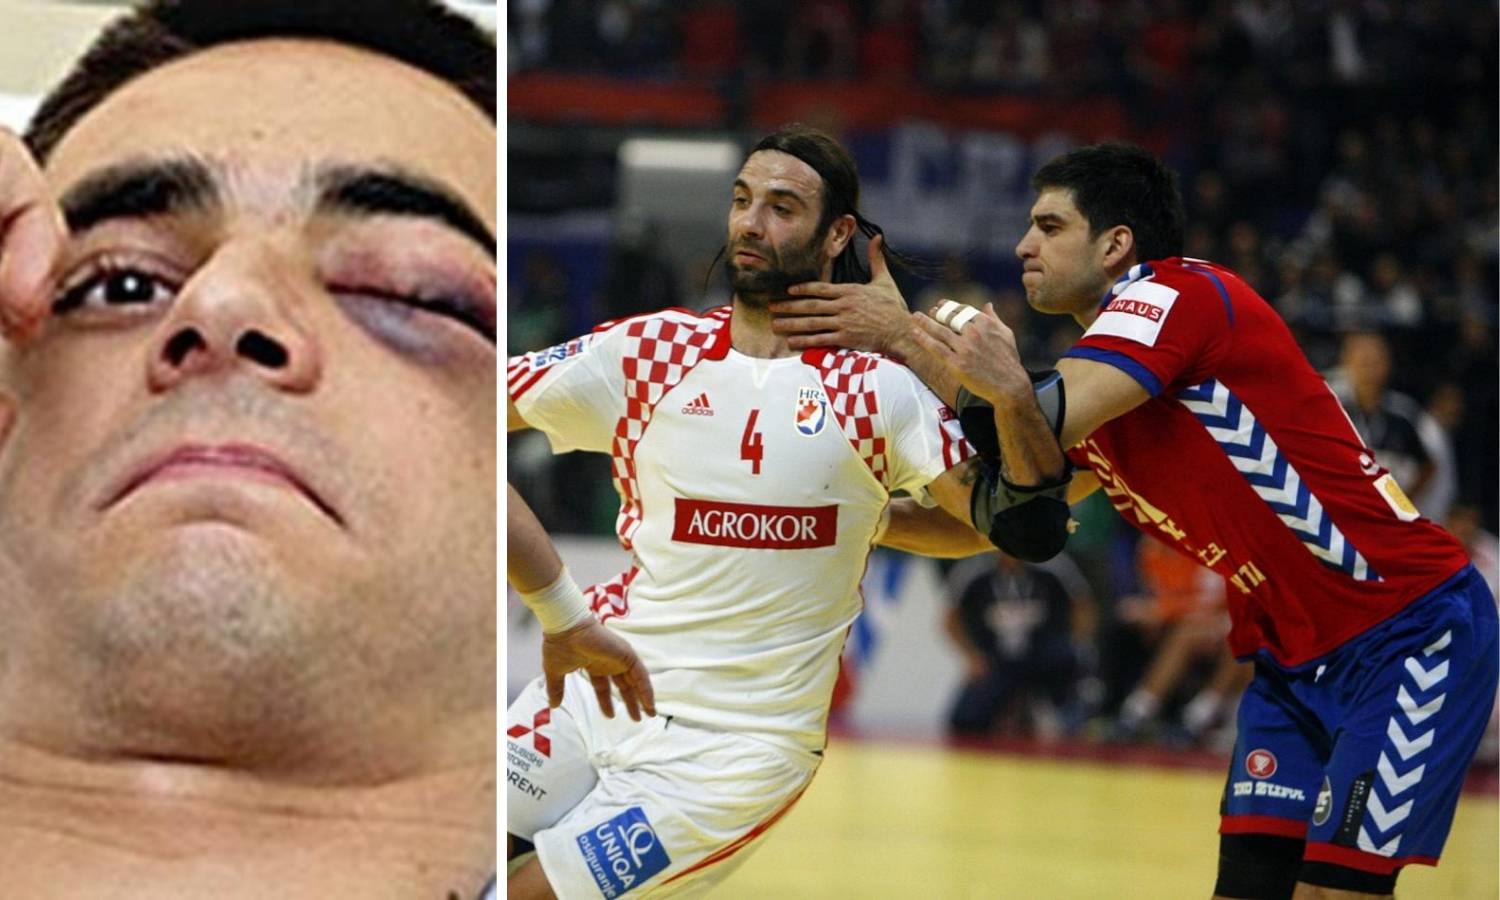 Srpski navijači gađali Golužu, a na kraju pogodili svog igrača...